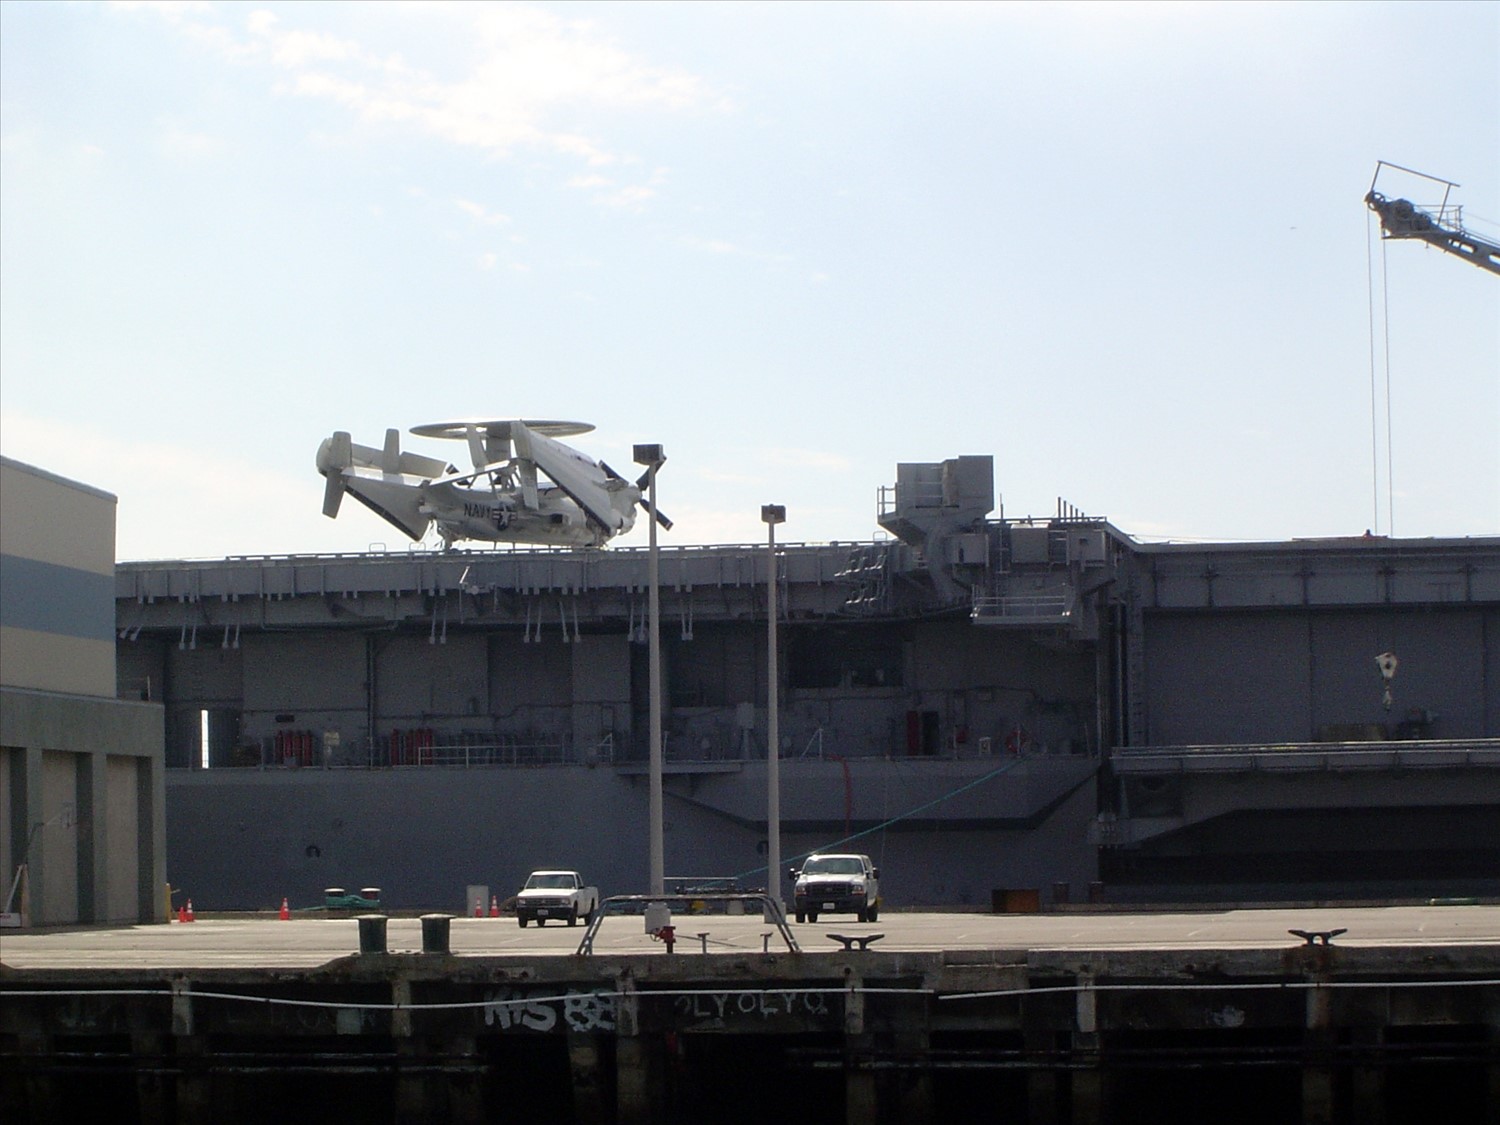 Closer view of an aircraft carrier. DSC00546.jpg. Uploaded by Erik Hoffmann on 2/24/2004. 